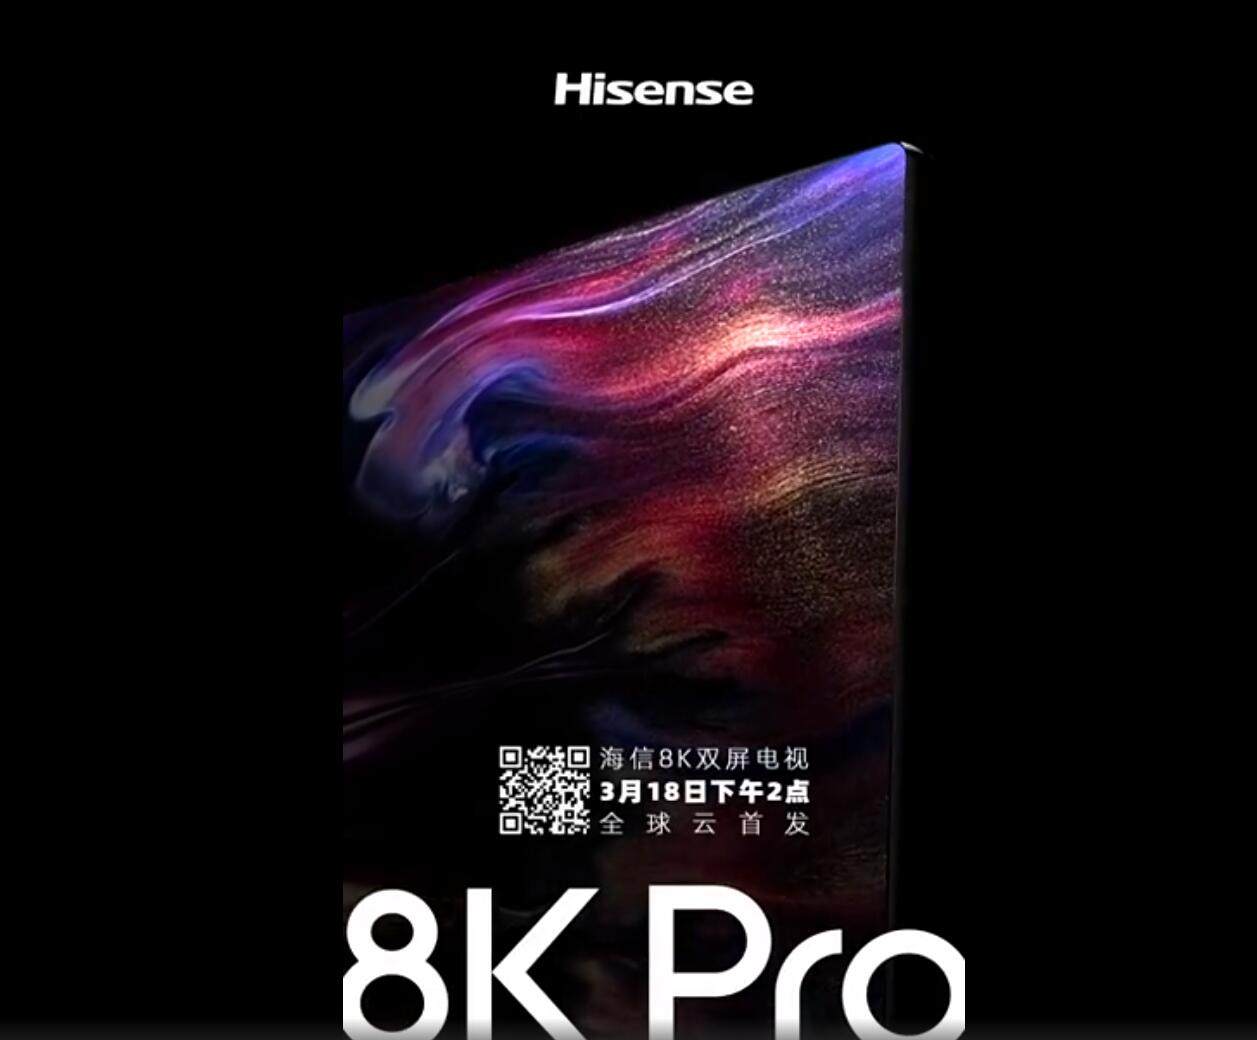 海信8K Pro双屏电视3月18日发布 极致表现如你所见